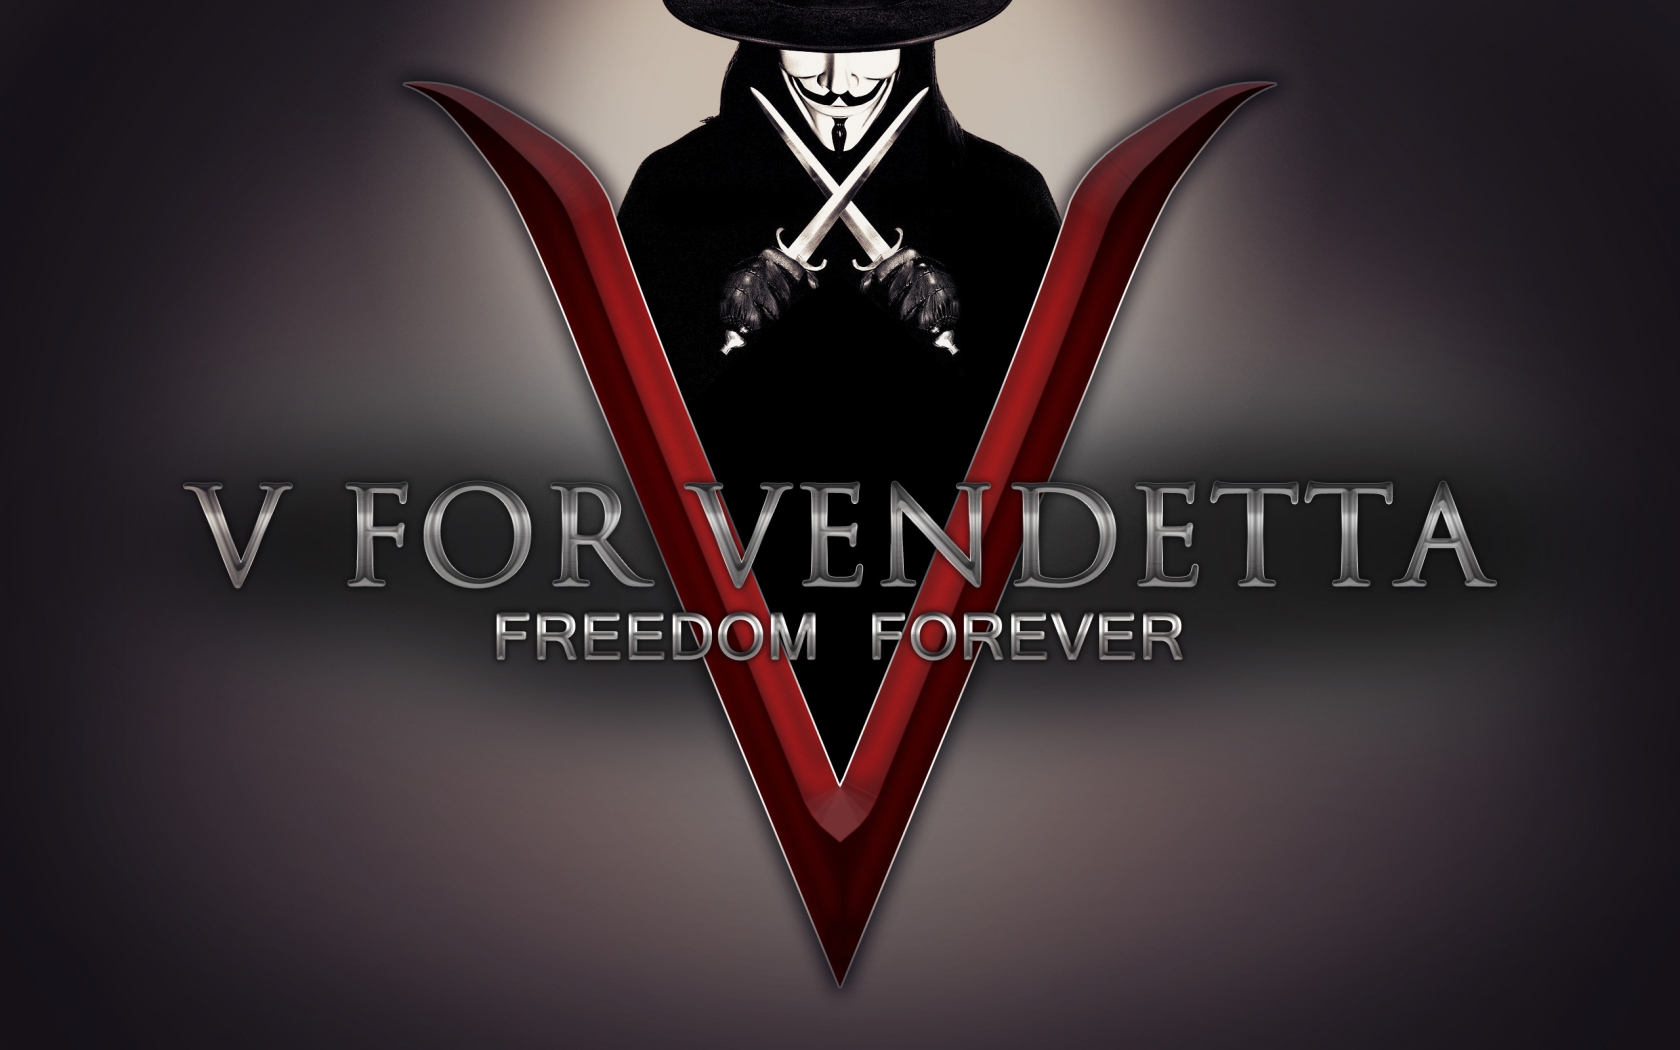 V for Vendetta Freedom Forever for 1680 x 1050 widescreen resolution